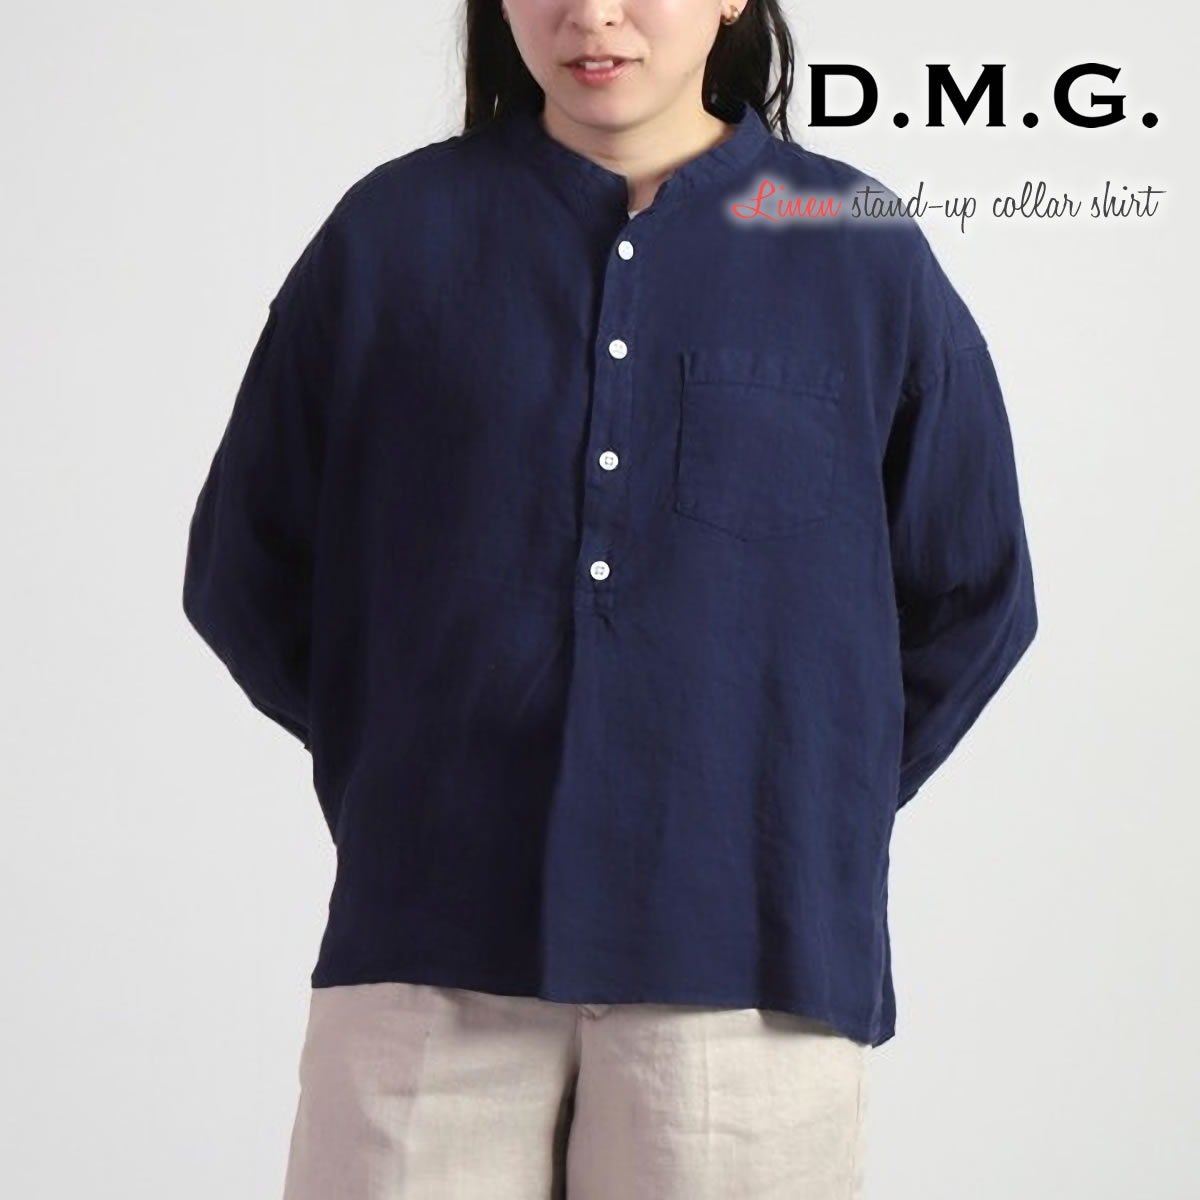 スタンドカラーシャツ ドミンゴ DMG プルオーバーワイドシャツ フレンチリネンキャンバス スタンド...